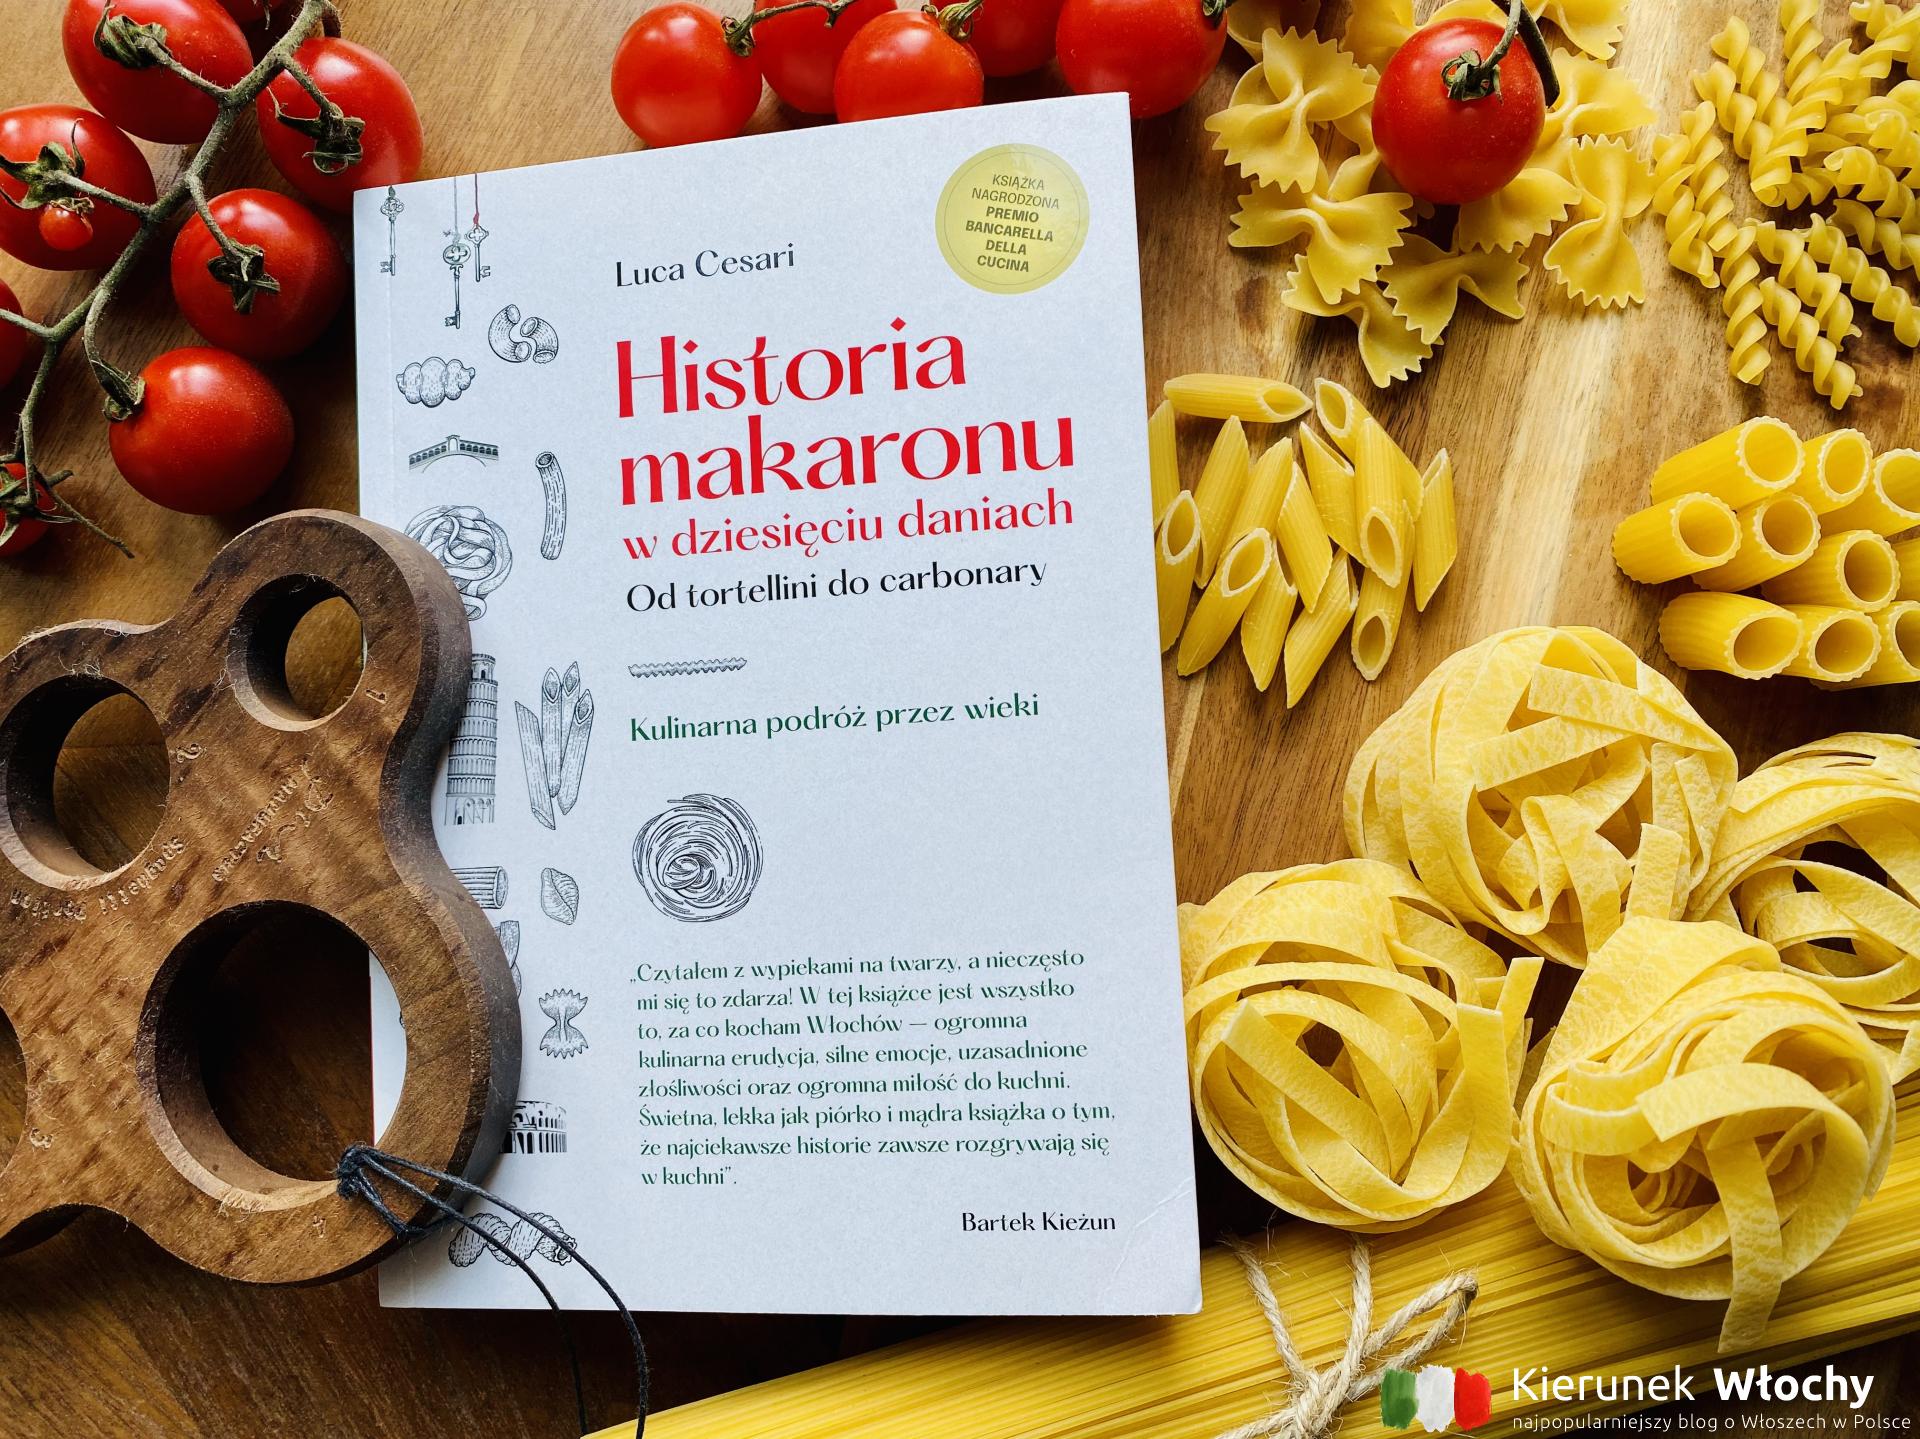 "Historia makaronu w dziesięciu daniach", która zmieni Twoje wyobrażenie o włoskiej kuchni (fot. Łukasz Ropczyński, kierunekwlochy.pl)